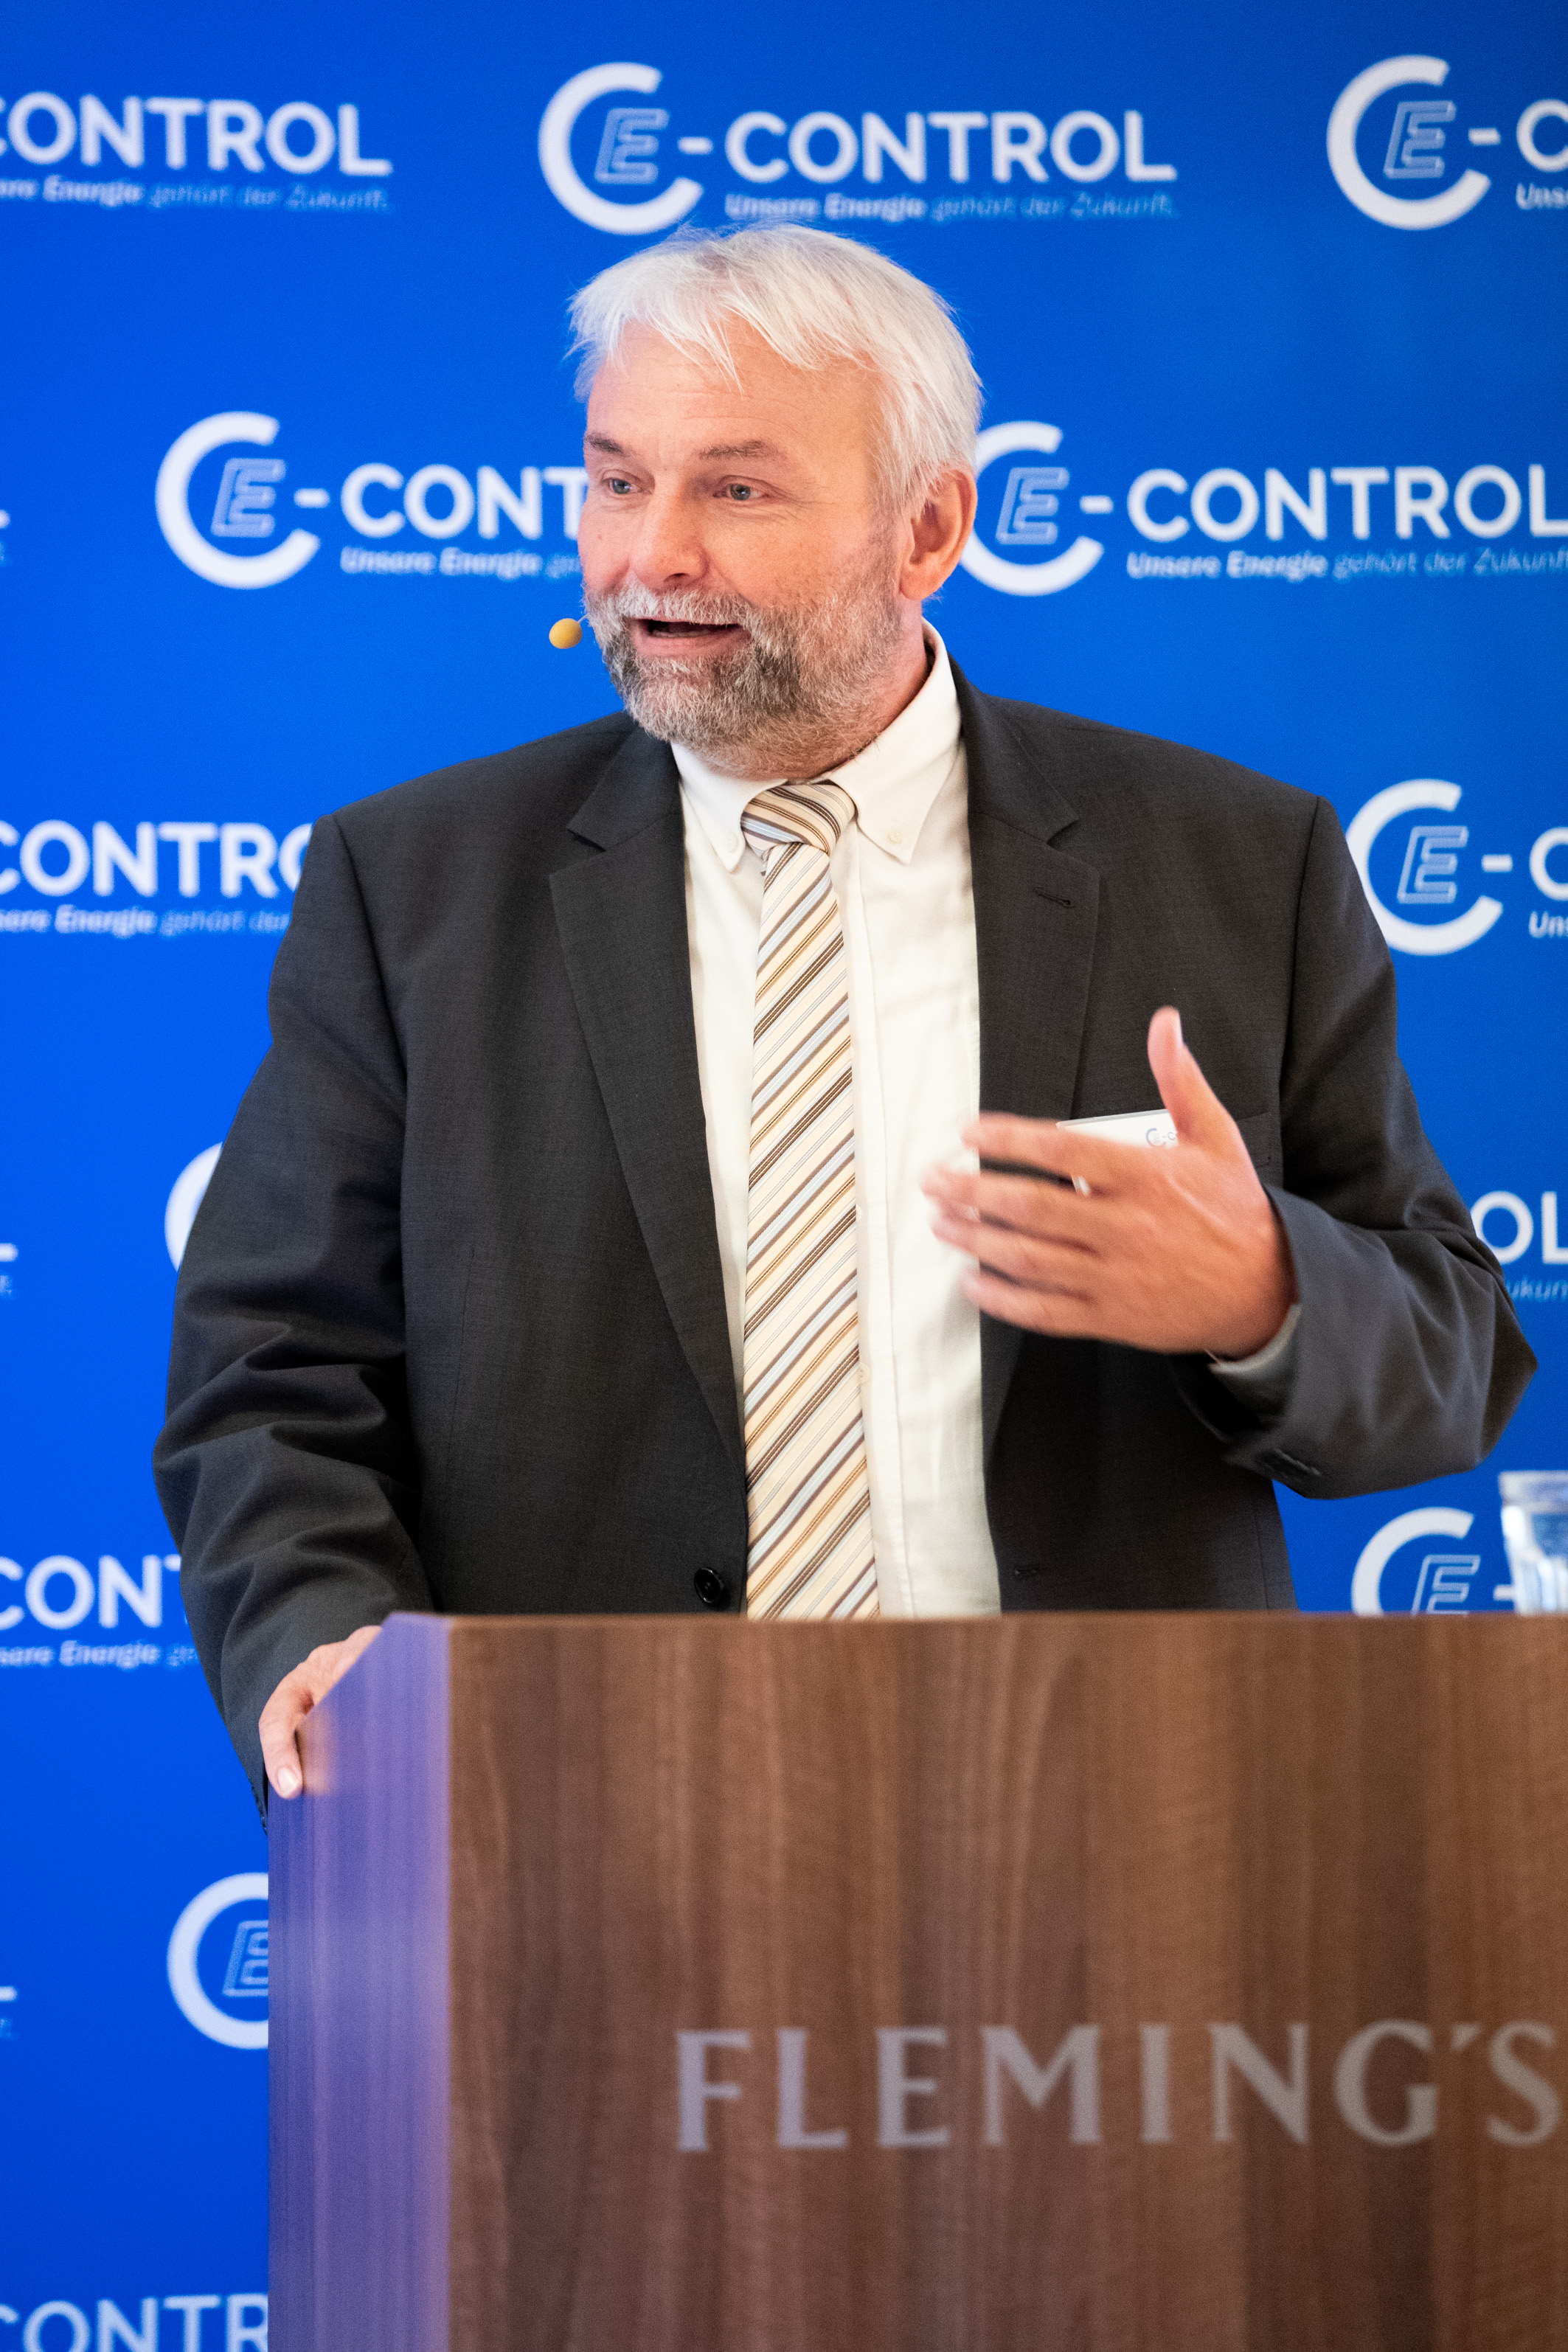 Andreas Eigenbauer, E-Control